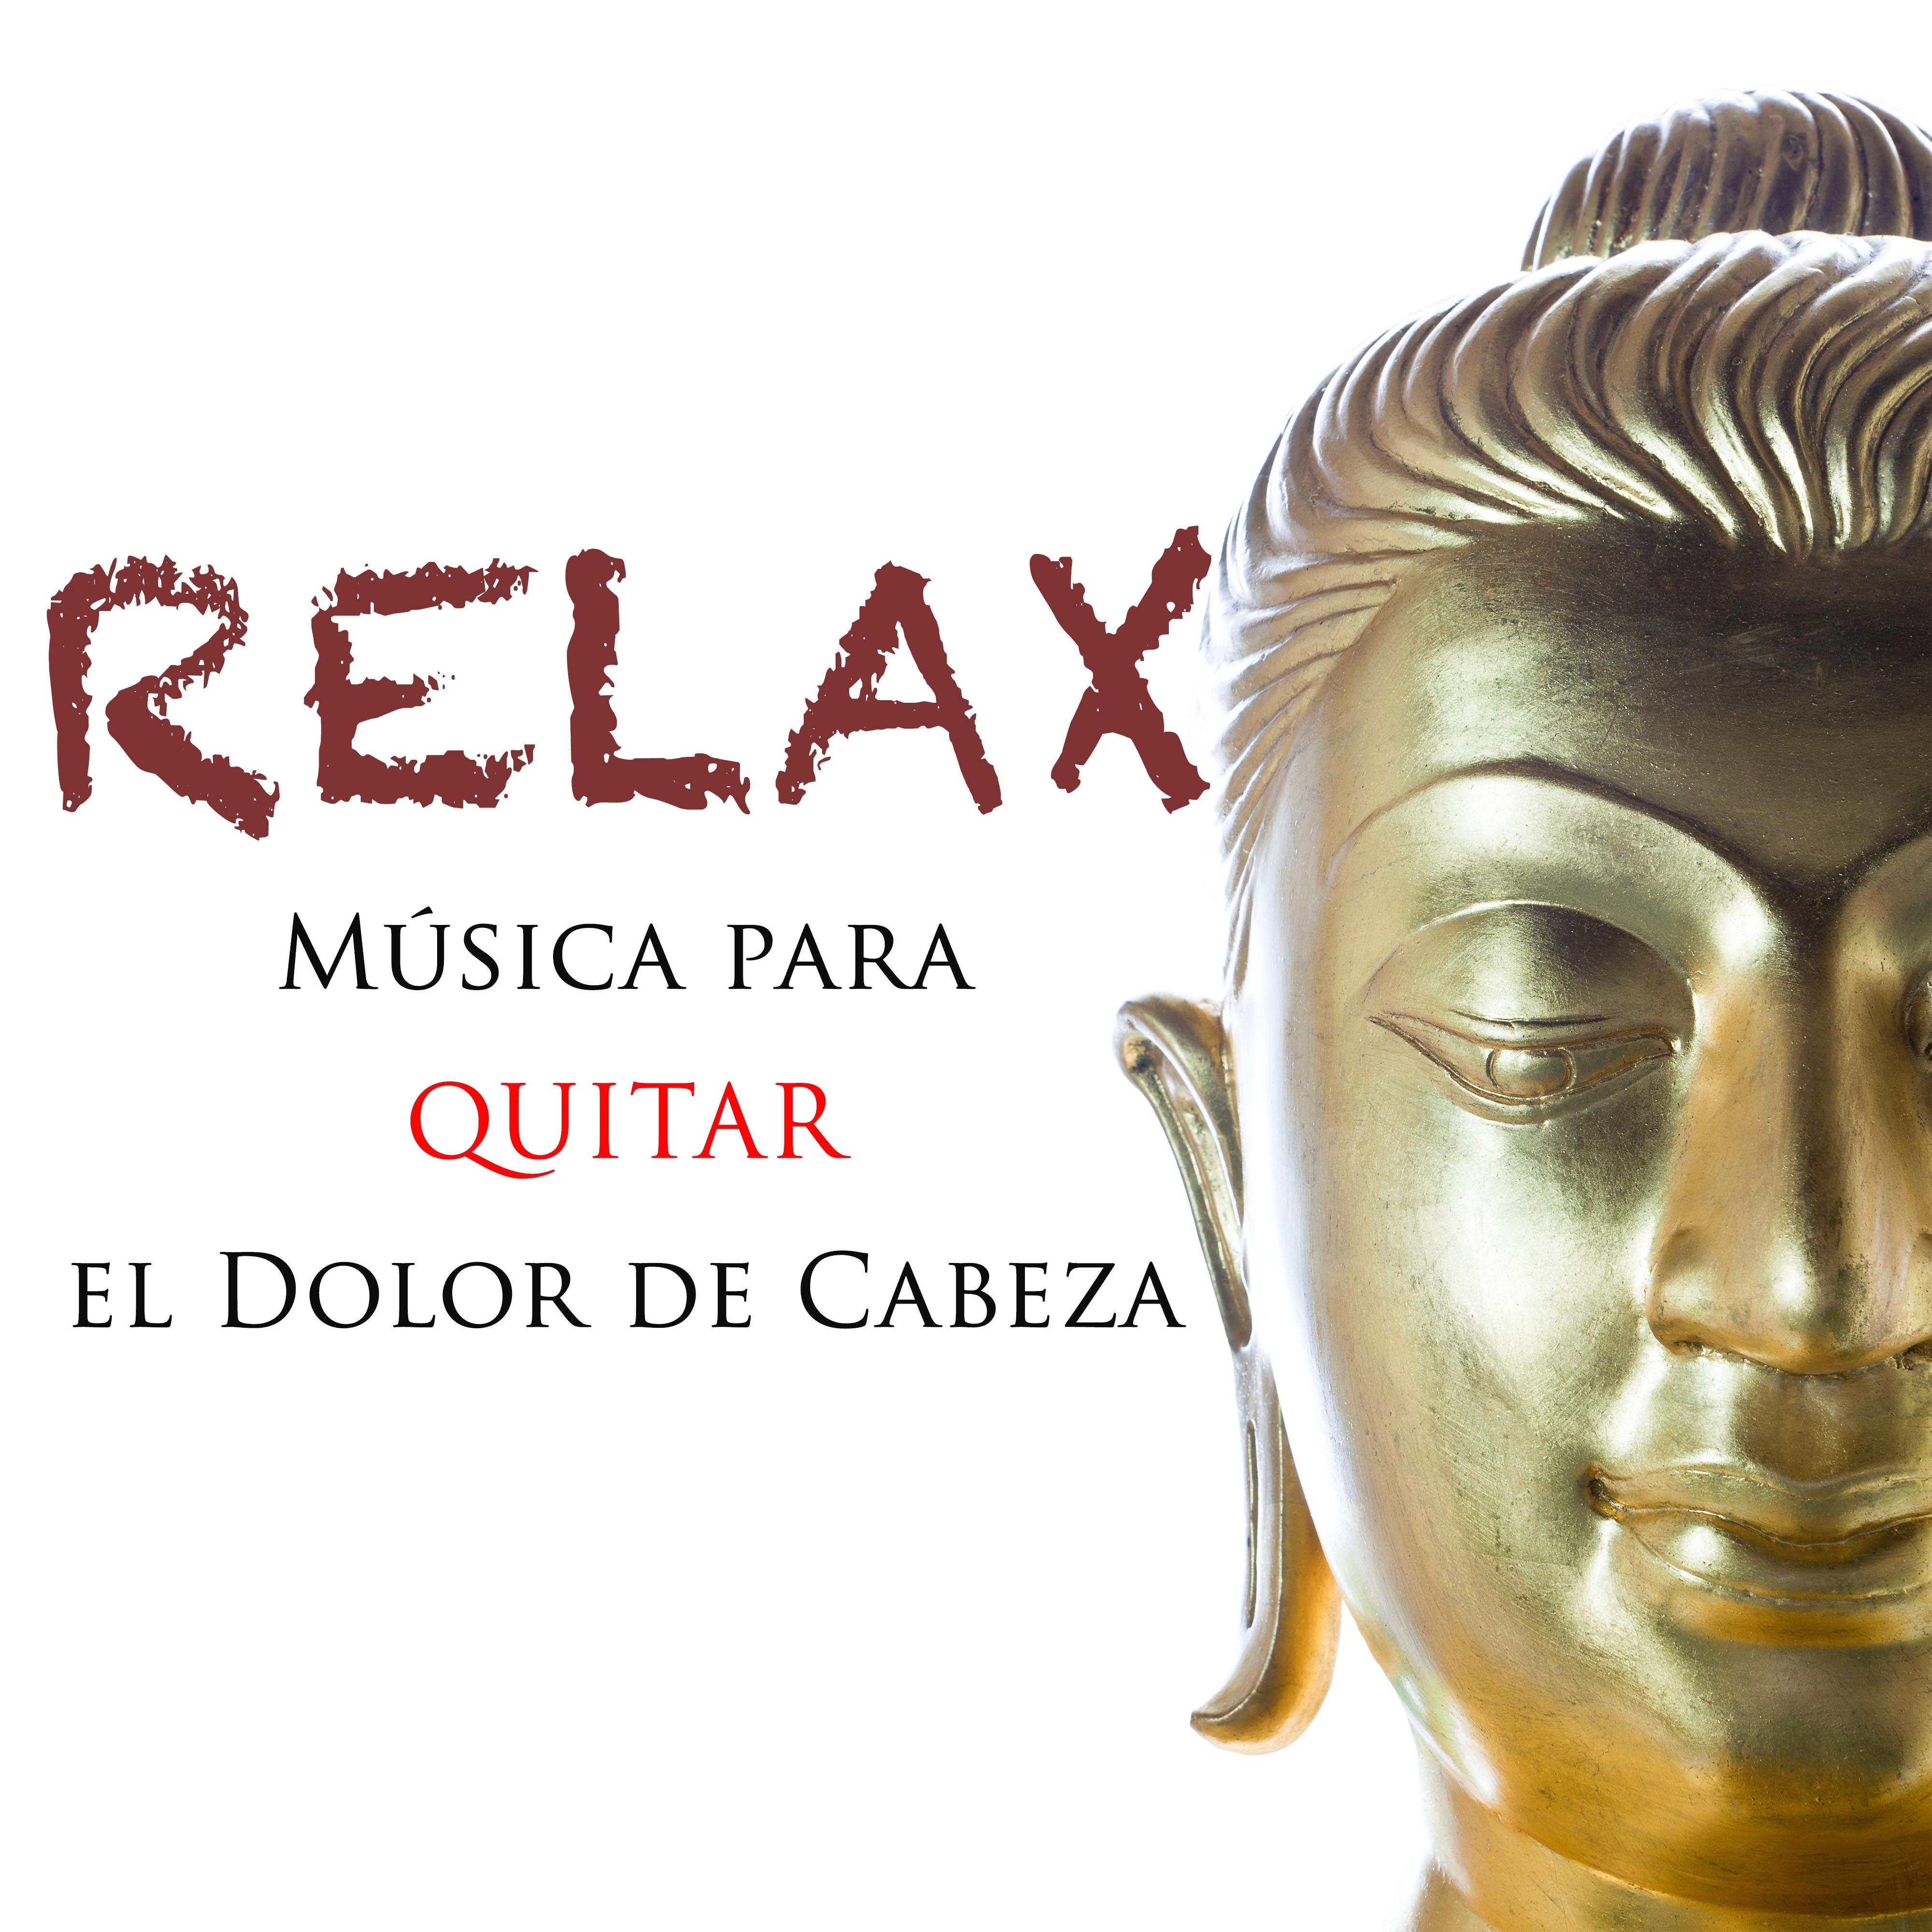 Relax: Música para Quitar o Aliviar el Dolor de Cabeza y Dormir Dulces Sueños sin Pesadillas